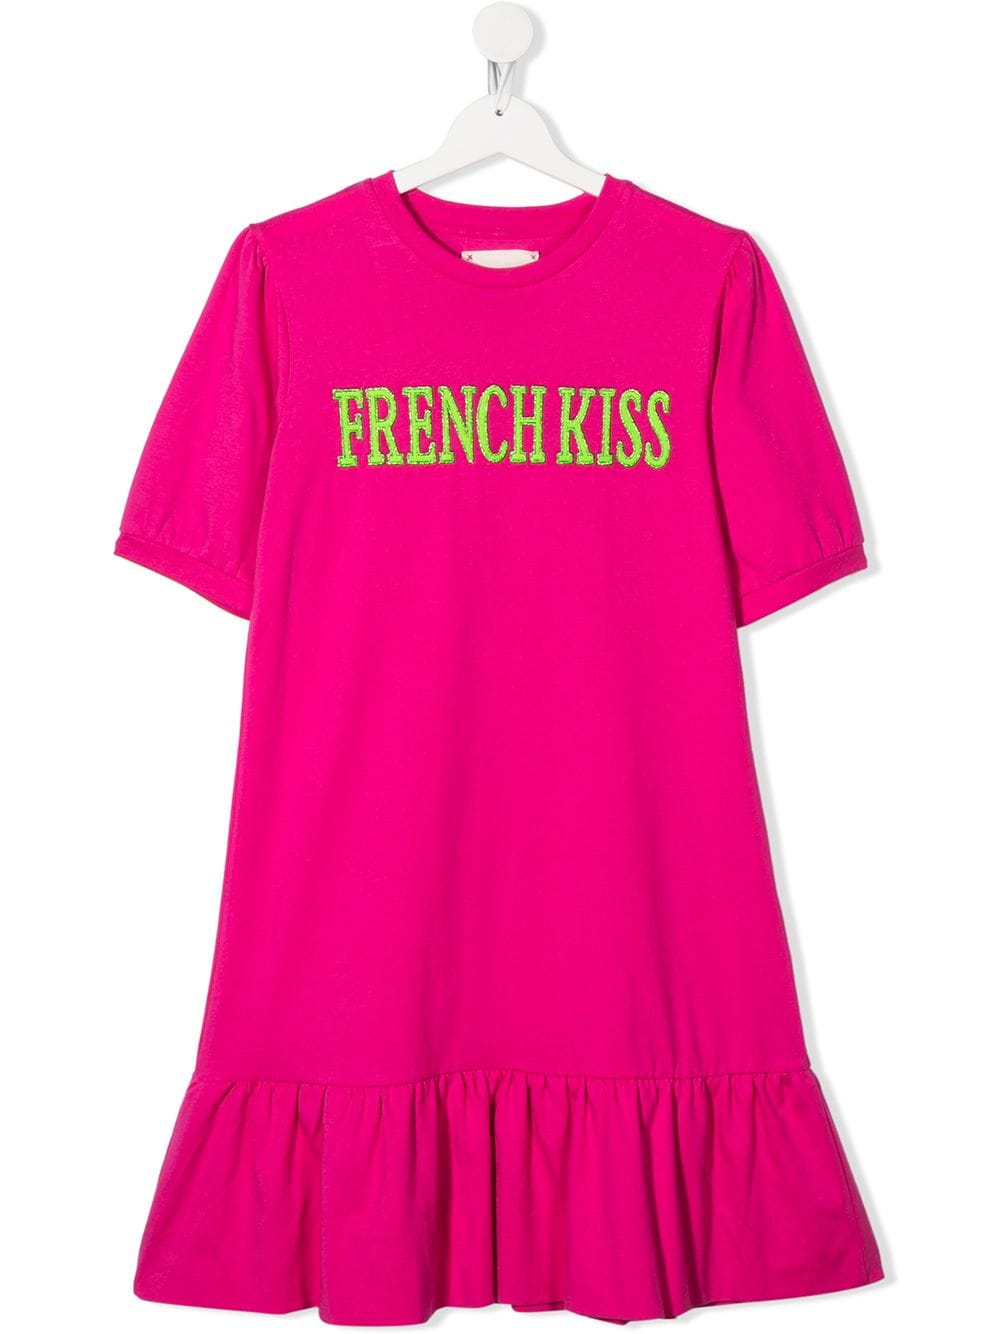 ALBERTA FERRETTI TEEN FRENCH KISS DRESS